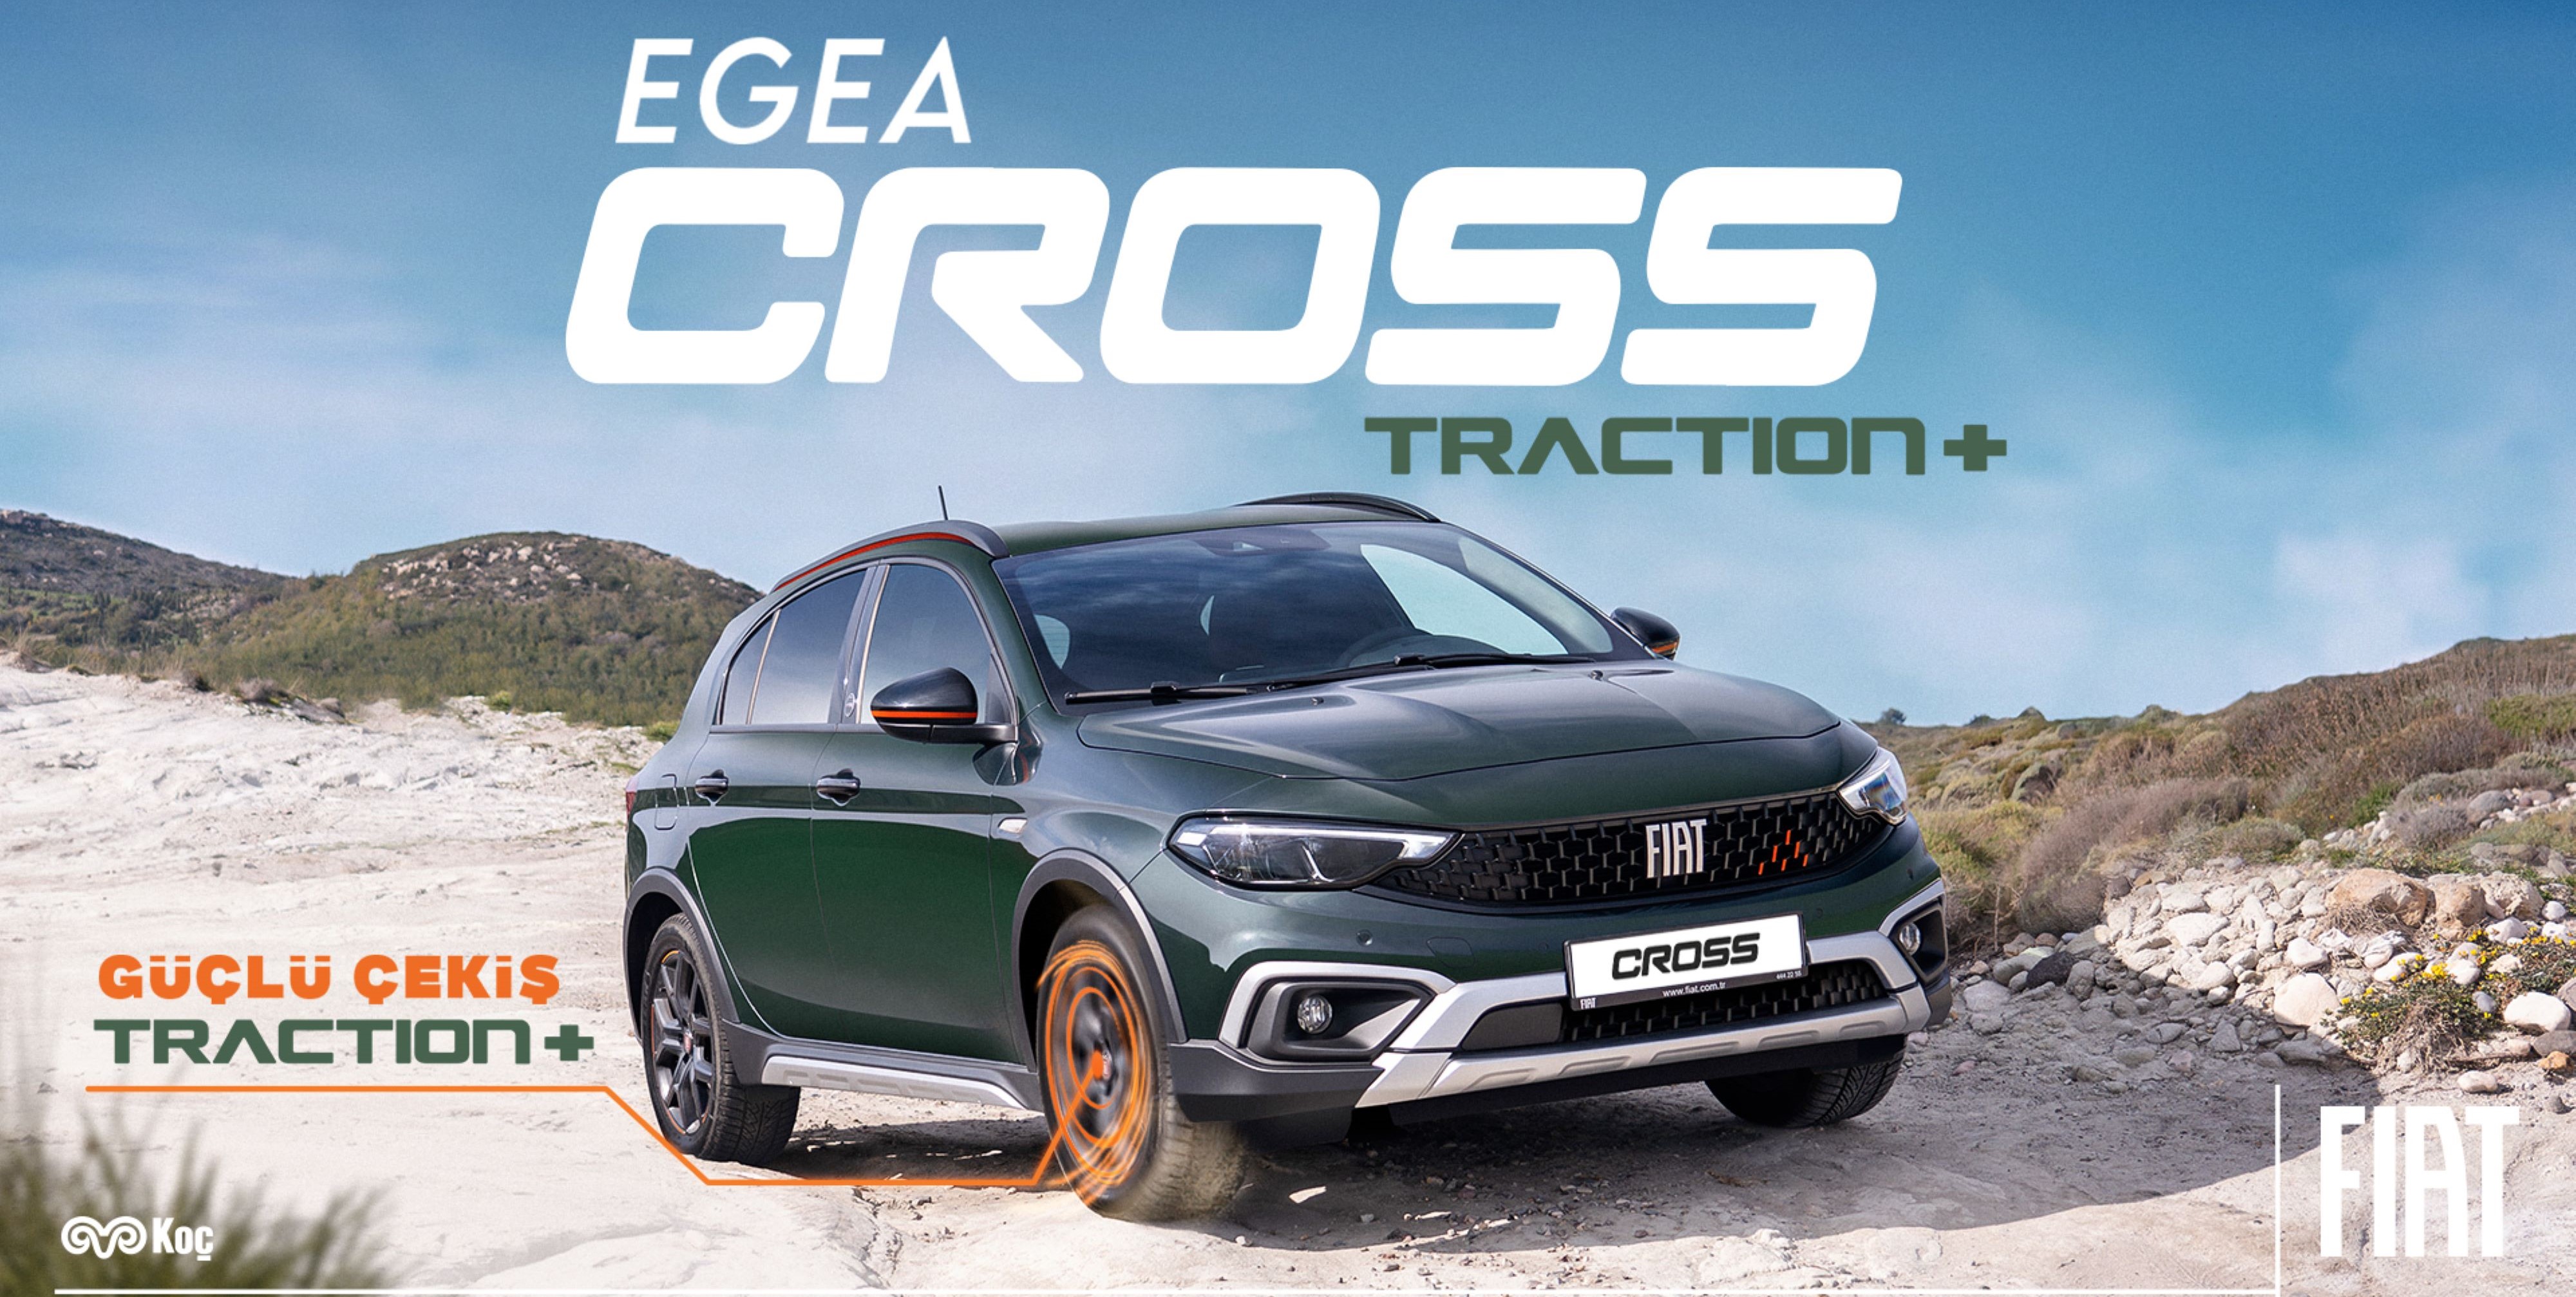 Fiat Egea Cross, Traction teknolojisiyle daha güçlü çekecek